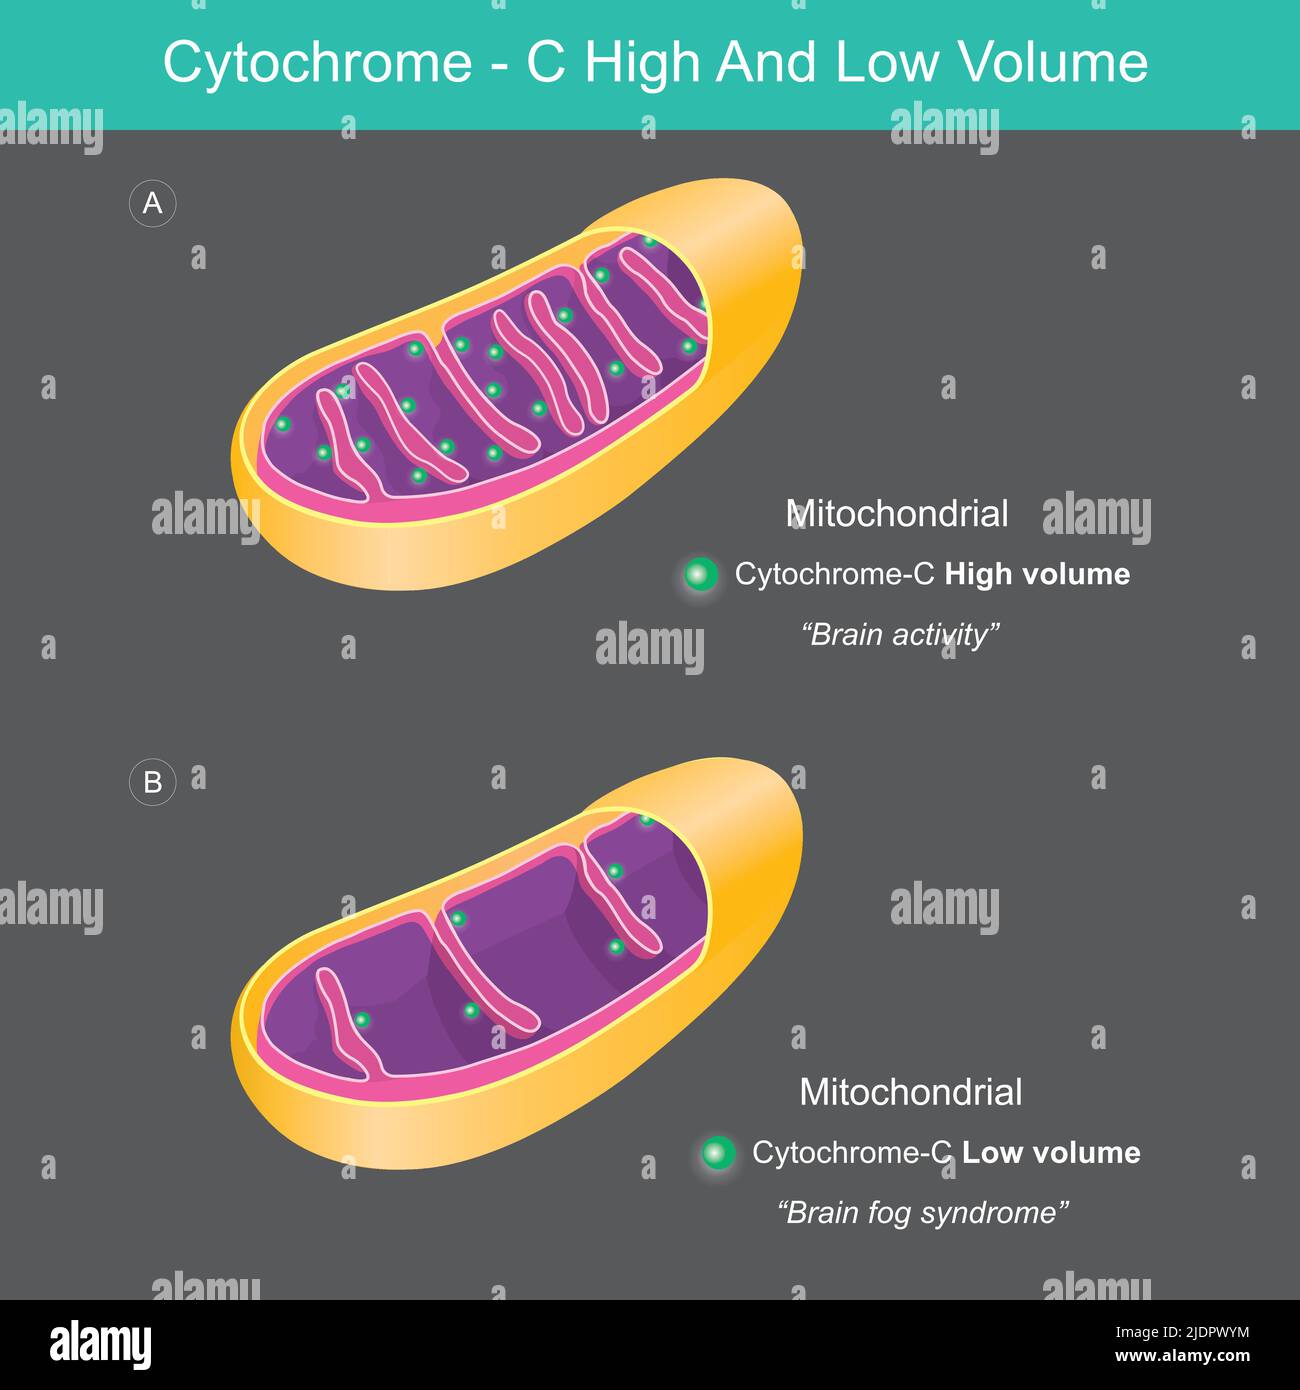 Cytochrom Mit Hohem Und Niedrigem Volumen. Das unterschiedliche Cytochrom C mit hohem und niedrigem Volumen in der mitochondrialen Abbildung. Stock Vektor